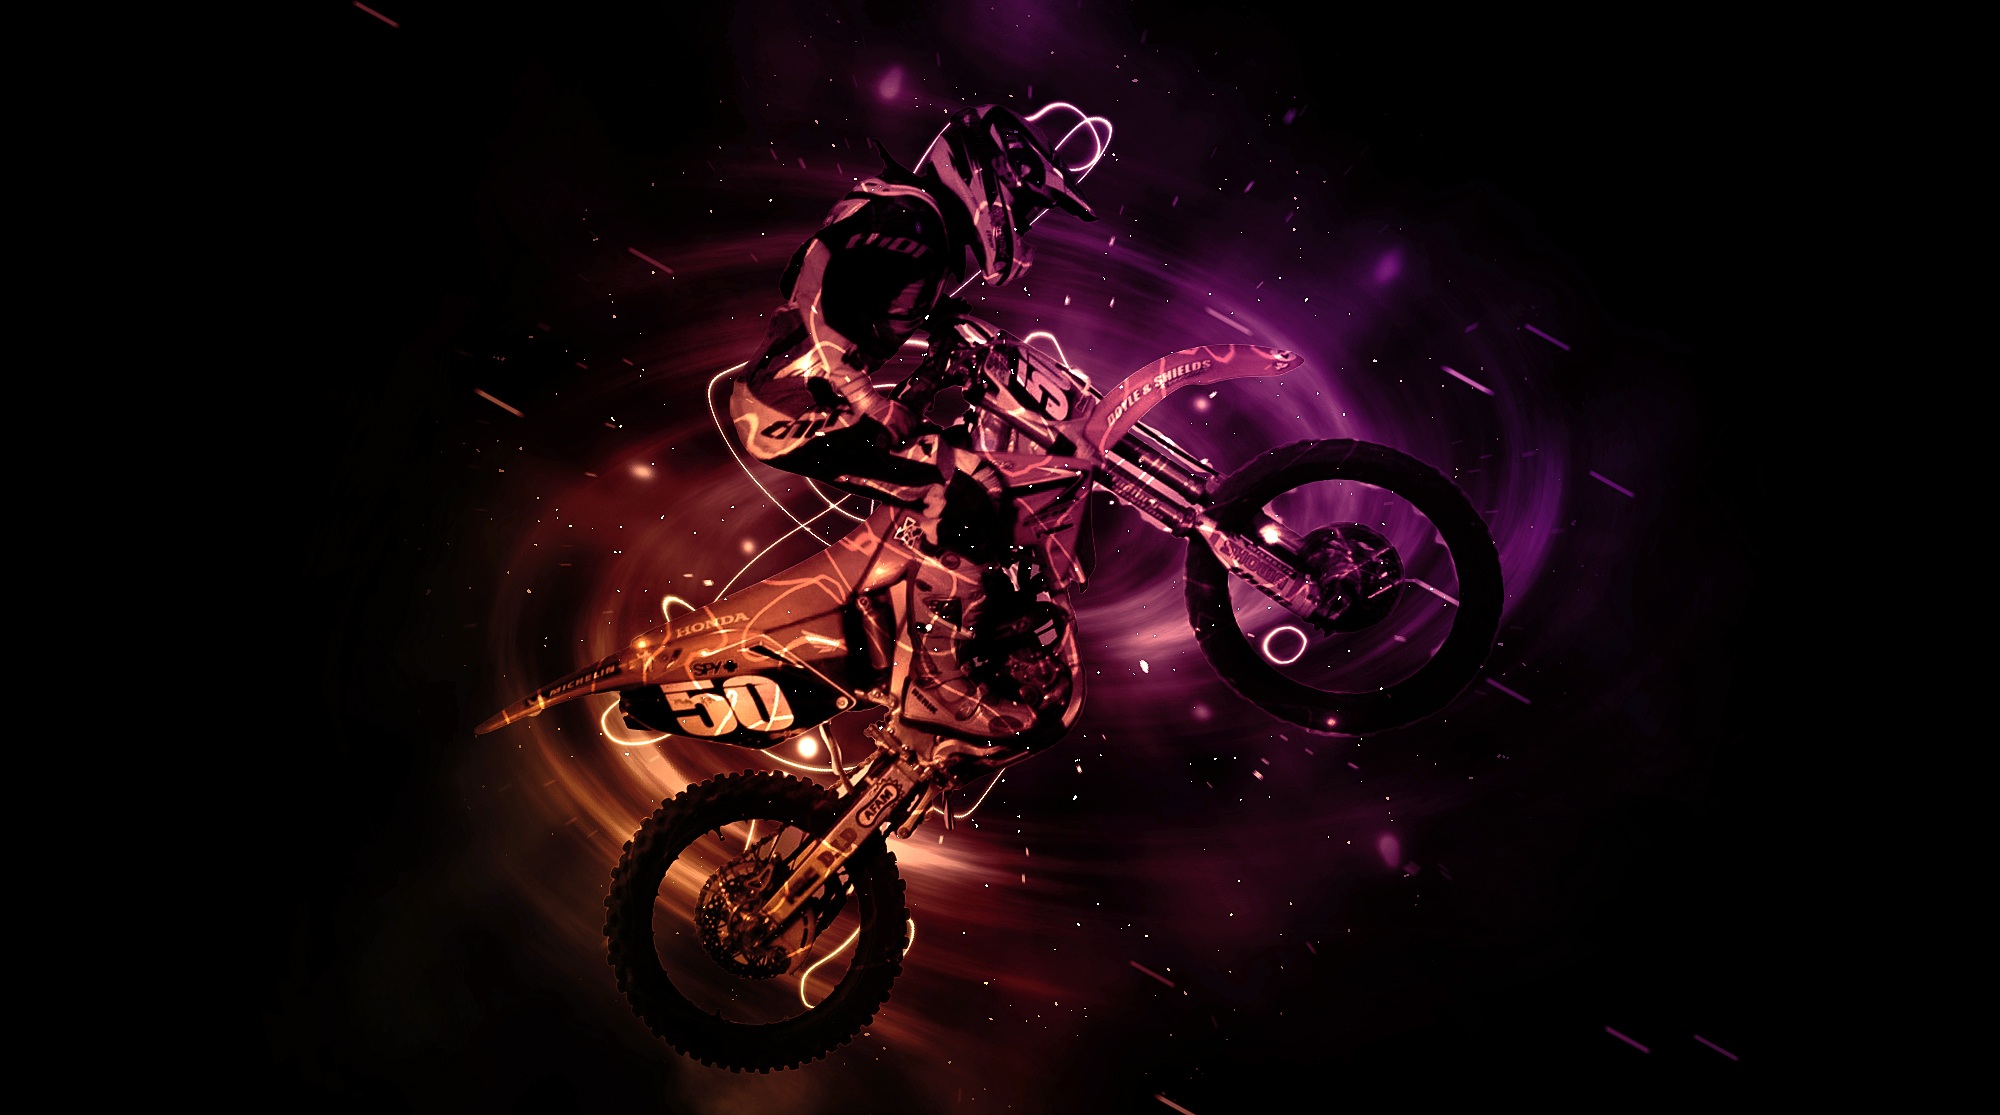 De motocross HD wallpapers